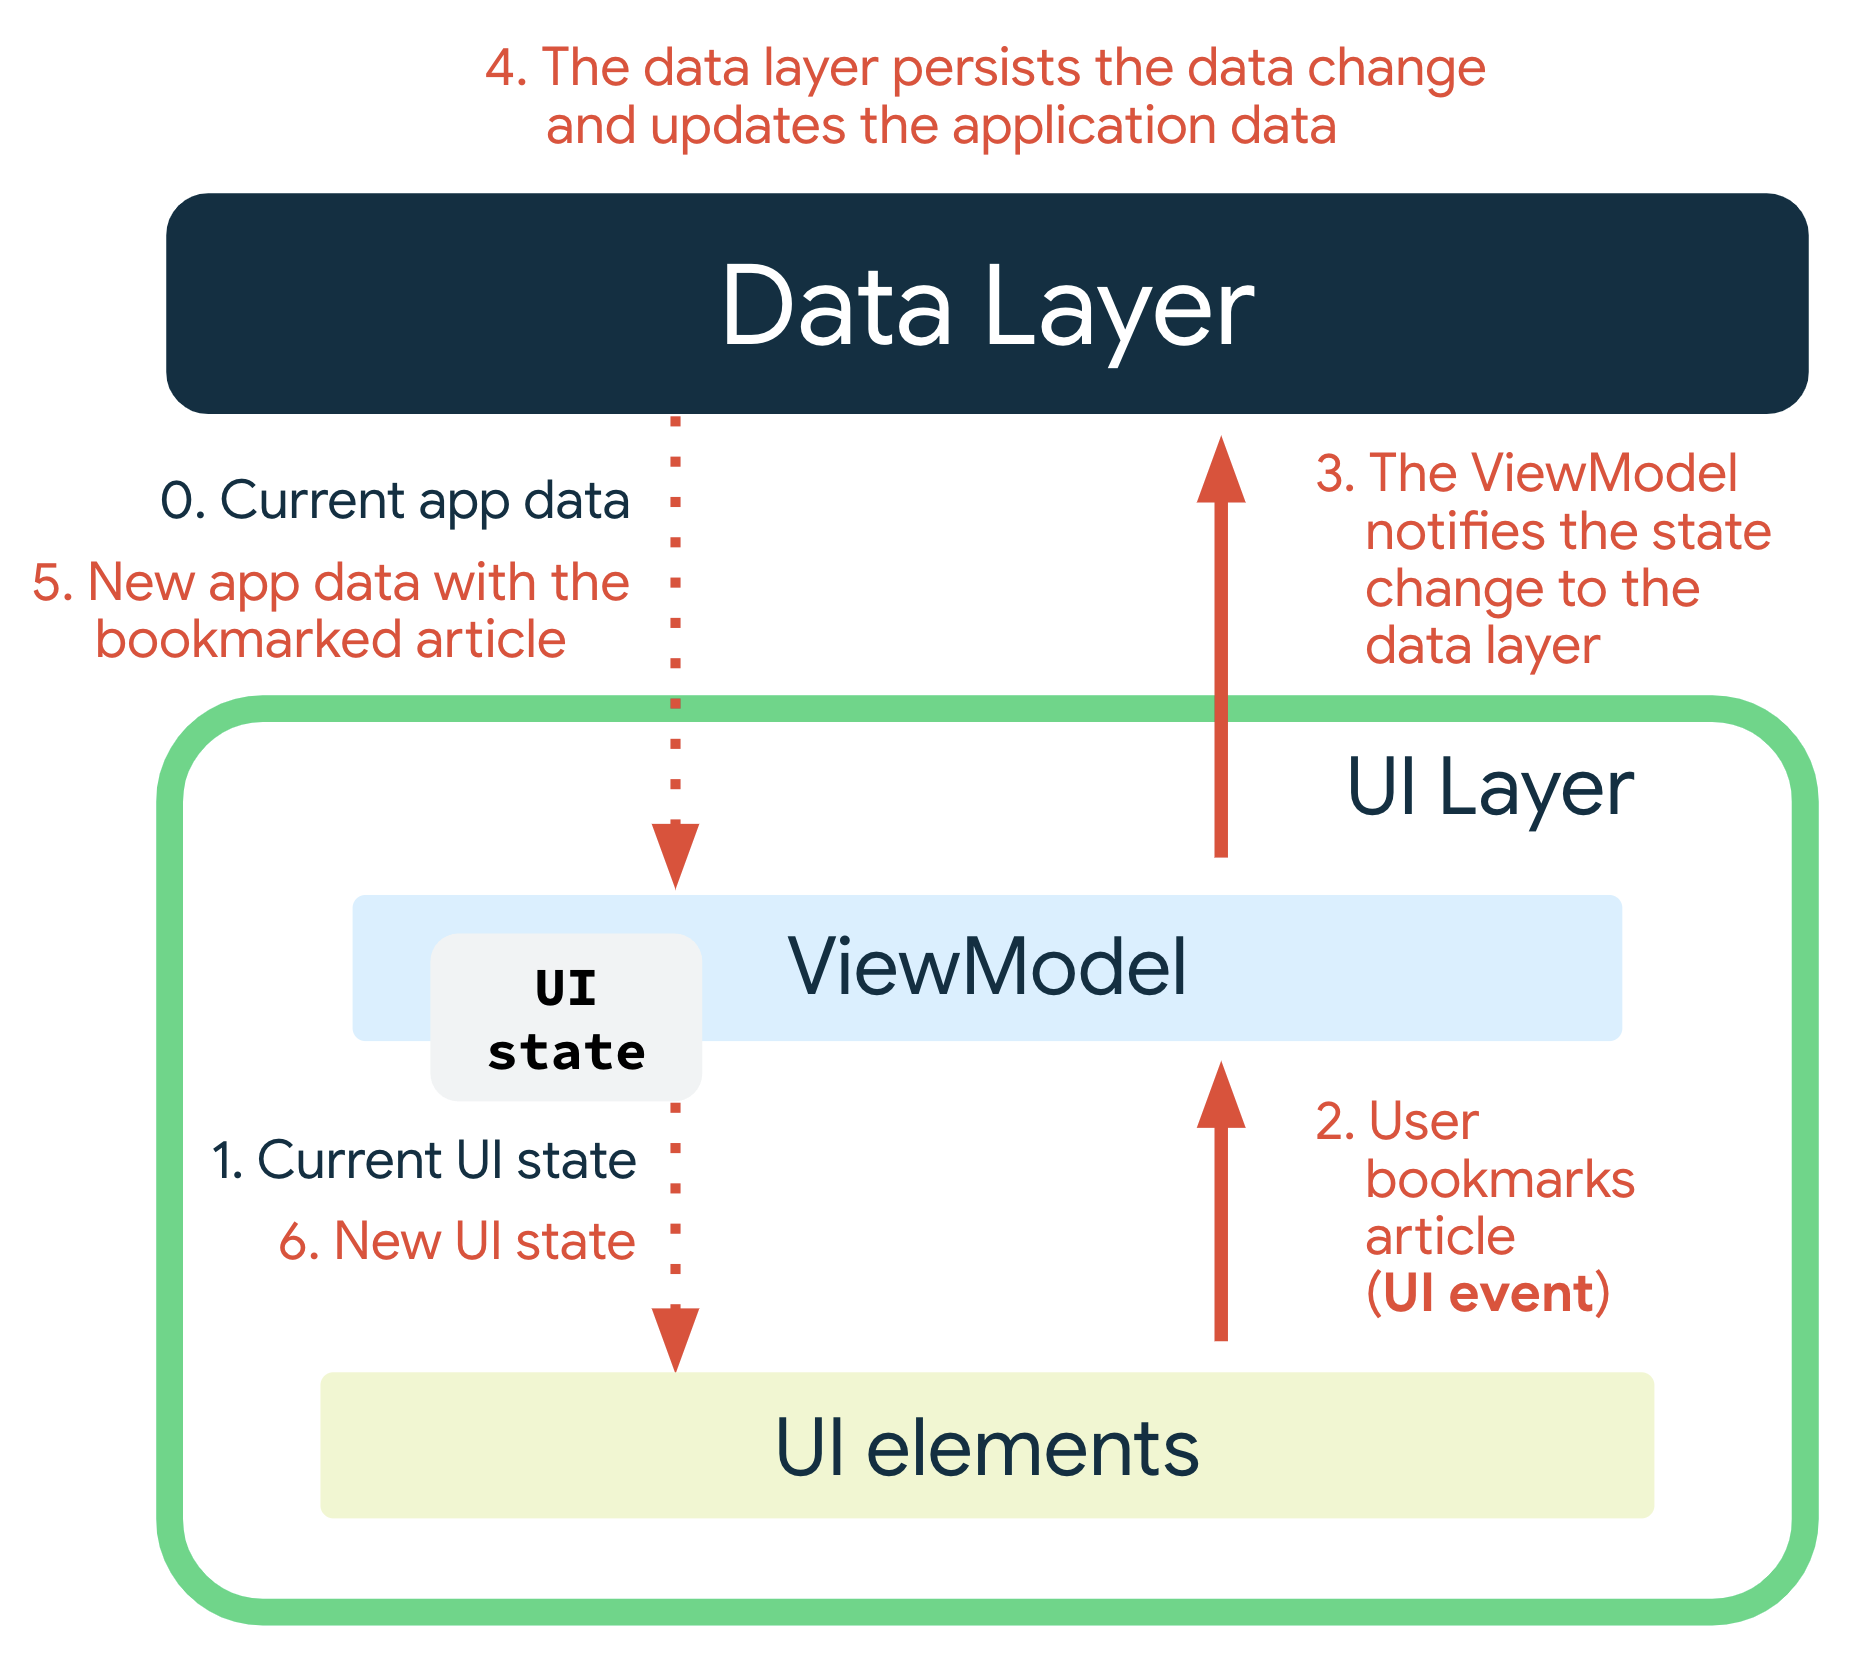 Un evento de IU se produce cuando el usuario agrega un artículo a favoritos. ViewModel notifica a la capa de datos sobre el cambio de estado. La capa de datos conserva los cambios de datos y actualiza los datos de la aplicación. Los datos de app nuevos con el artículo agregado a favoritos se pasan al ViewModel, que produce el nuevo estado de IU y lo pasa a los elementos de la IU para su visualización.